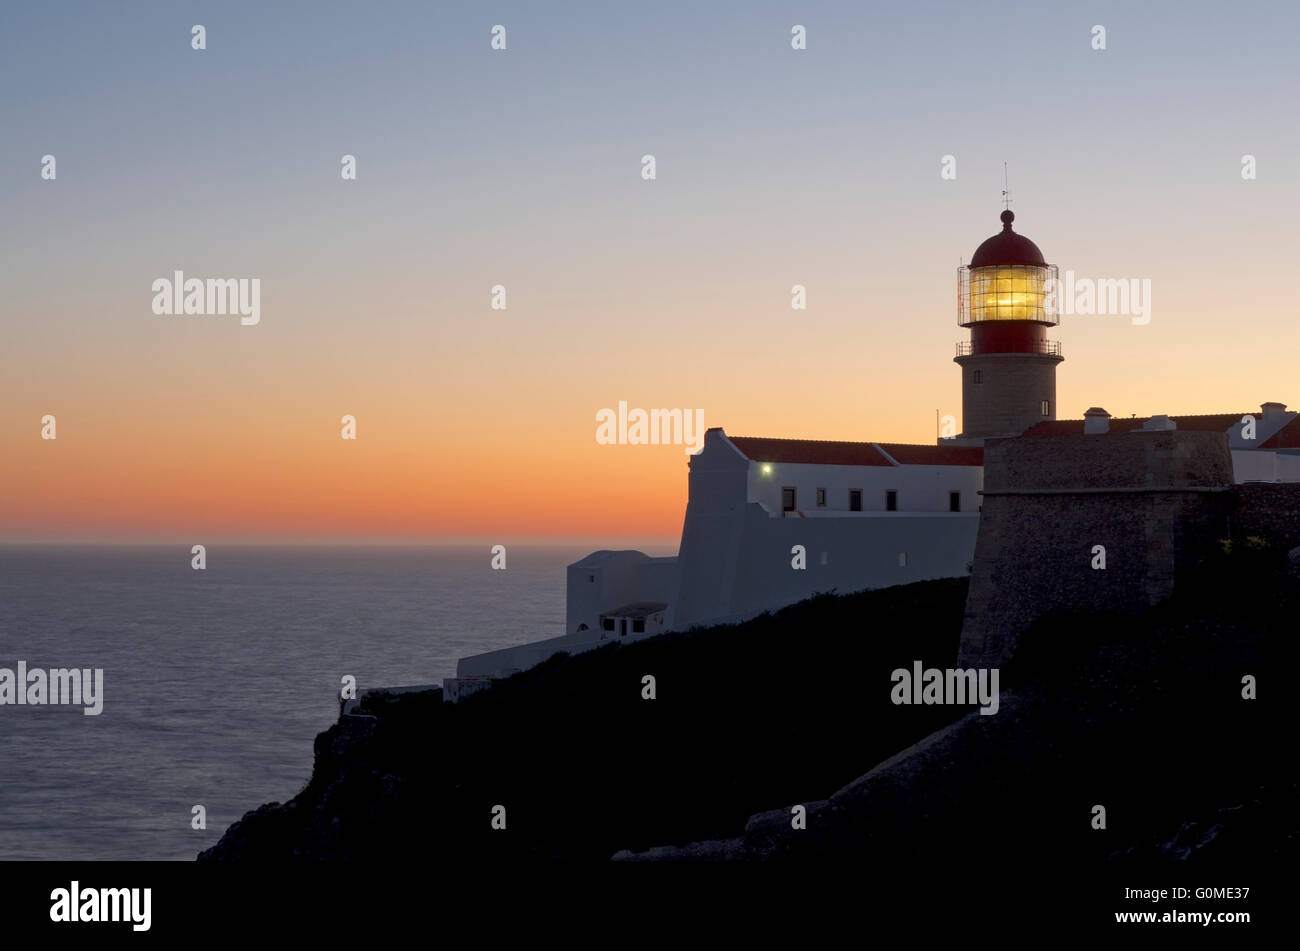 Le phare de Cabo Sao Vicente au crépuscule, Algarve Portugal Banque D'Images